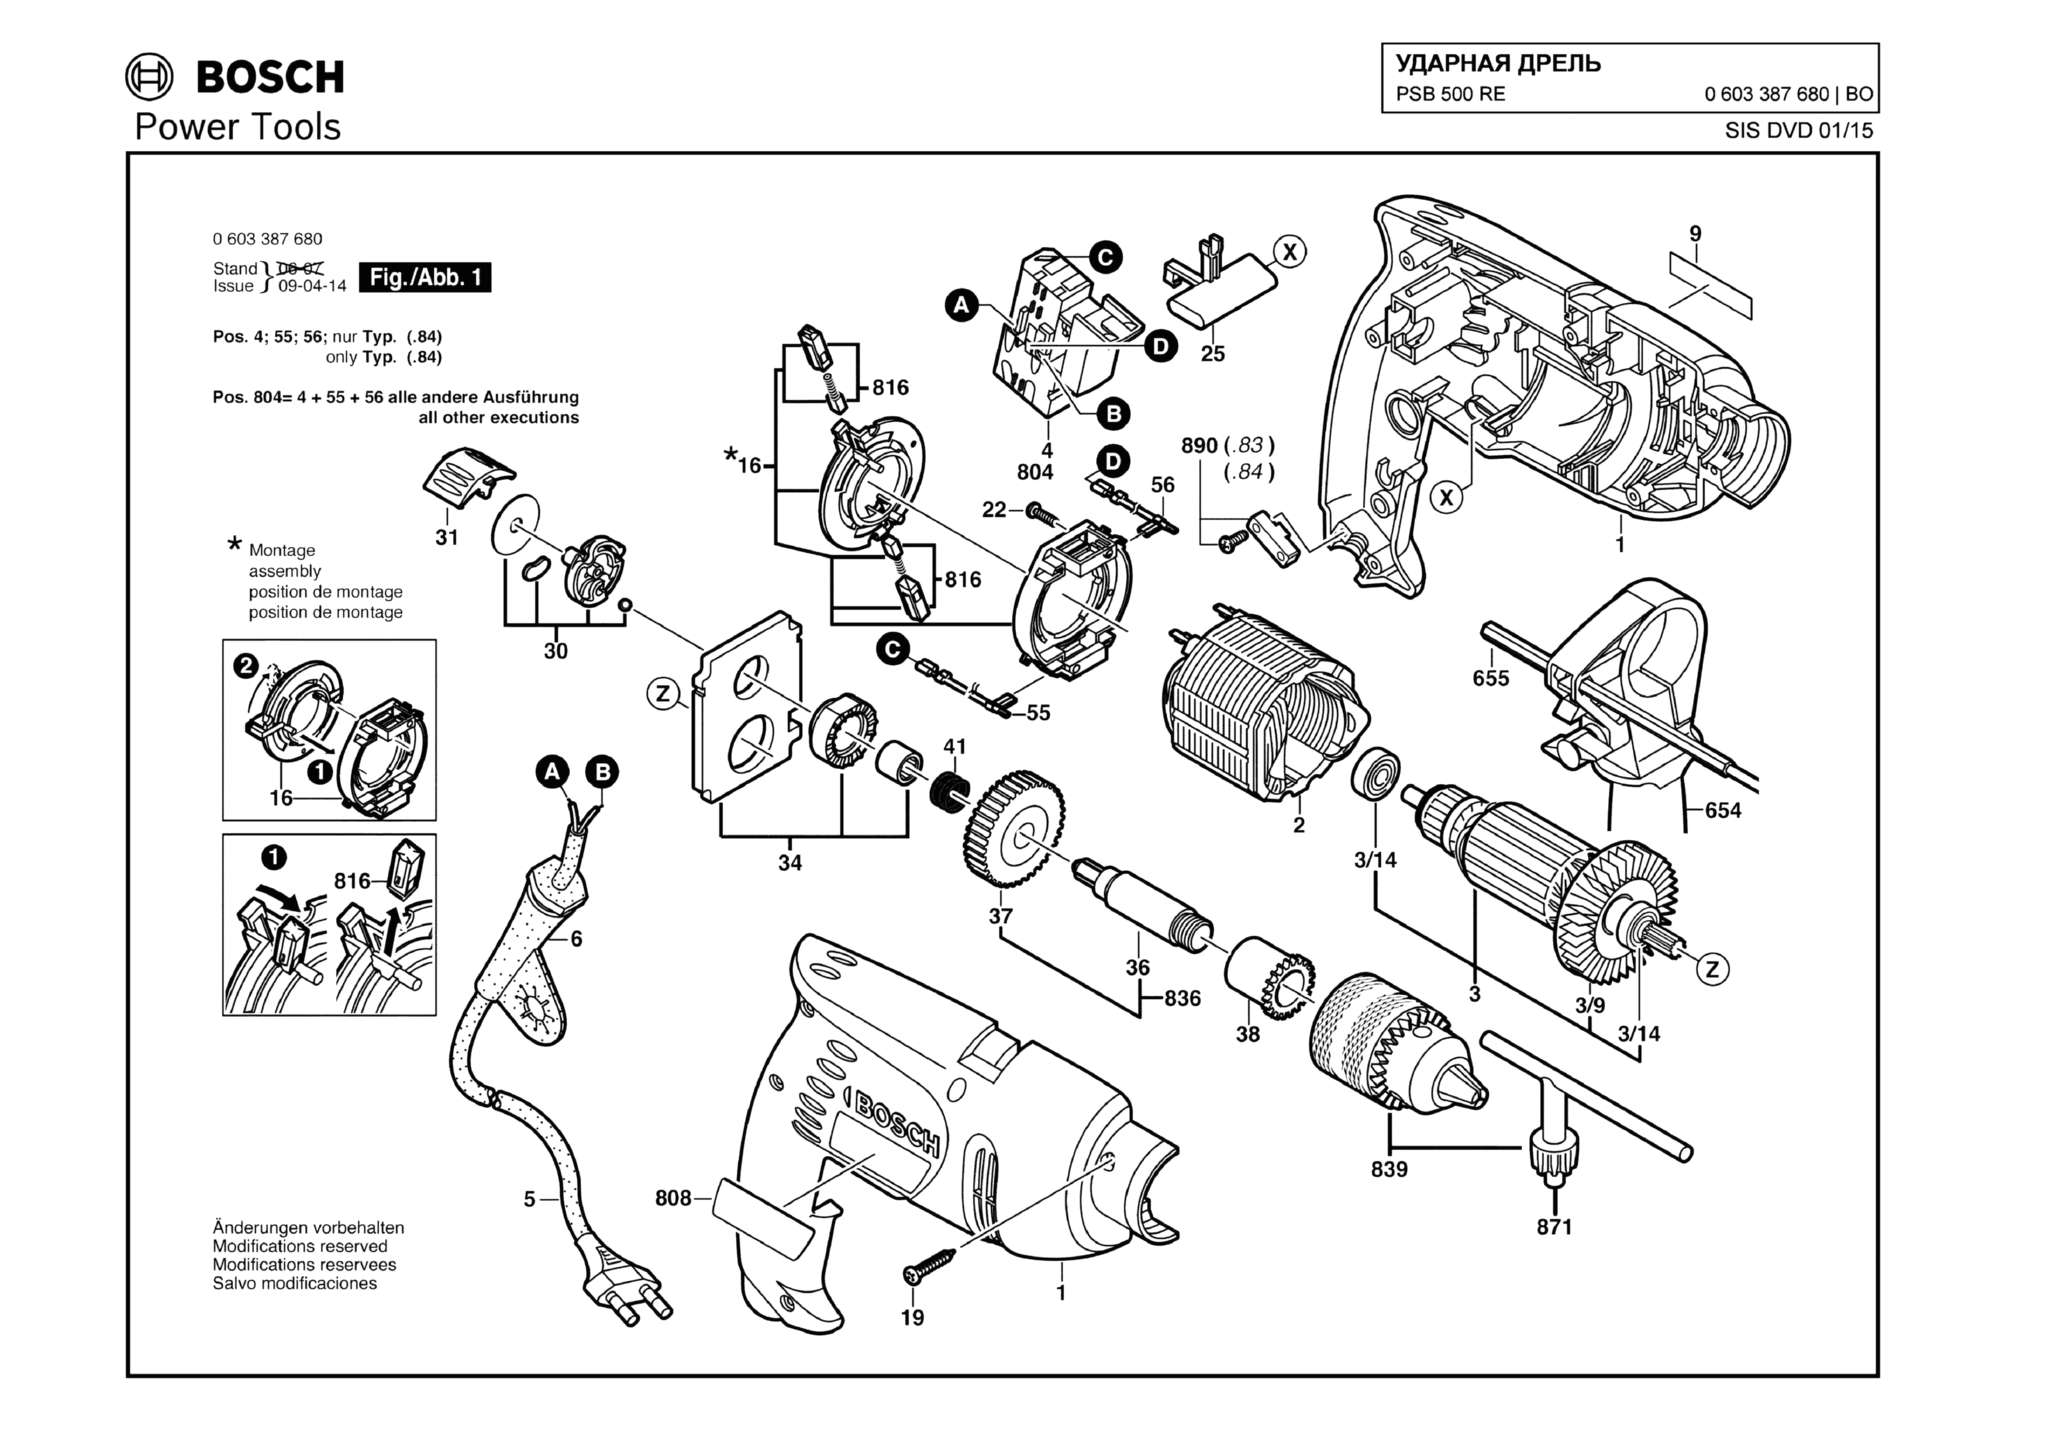 Запчасти, схема и деталировка Bosch PSB 500 RE (ТИП 0603387680)